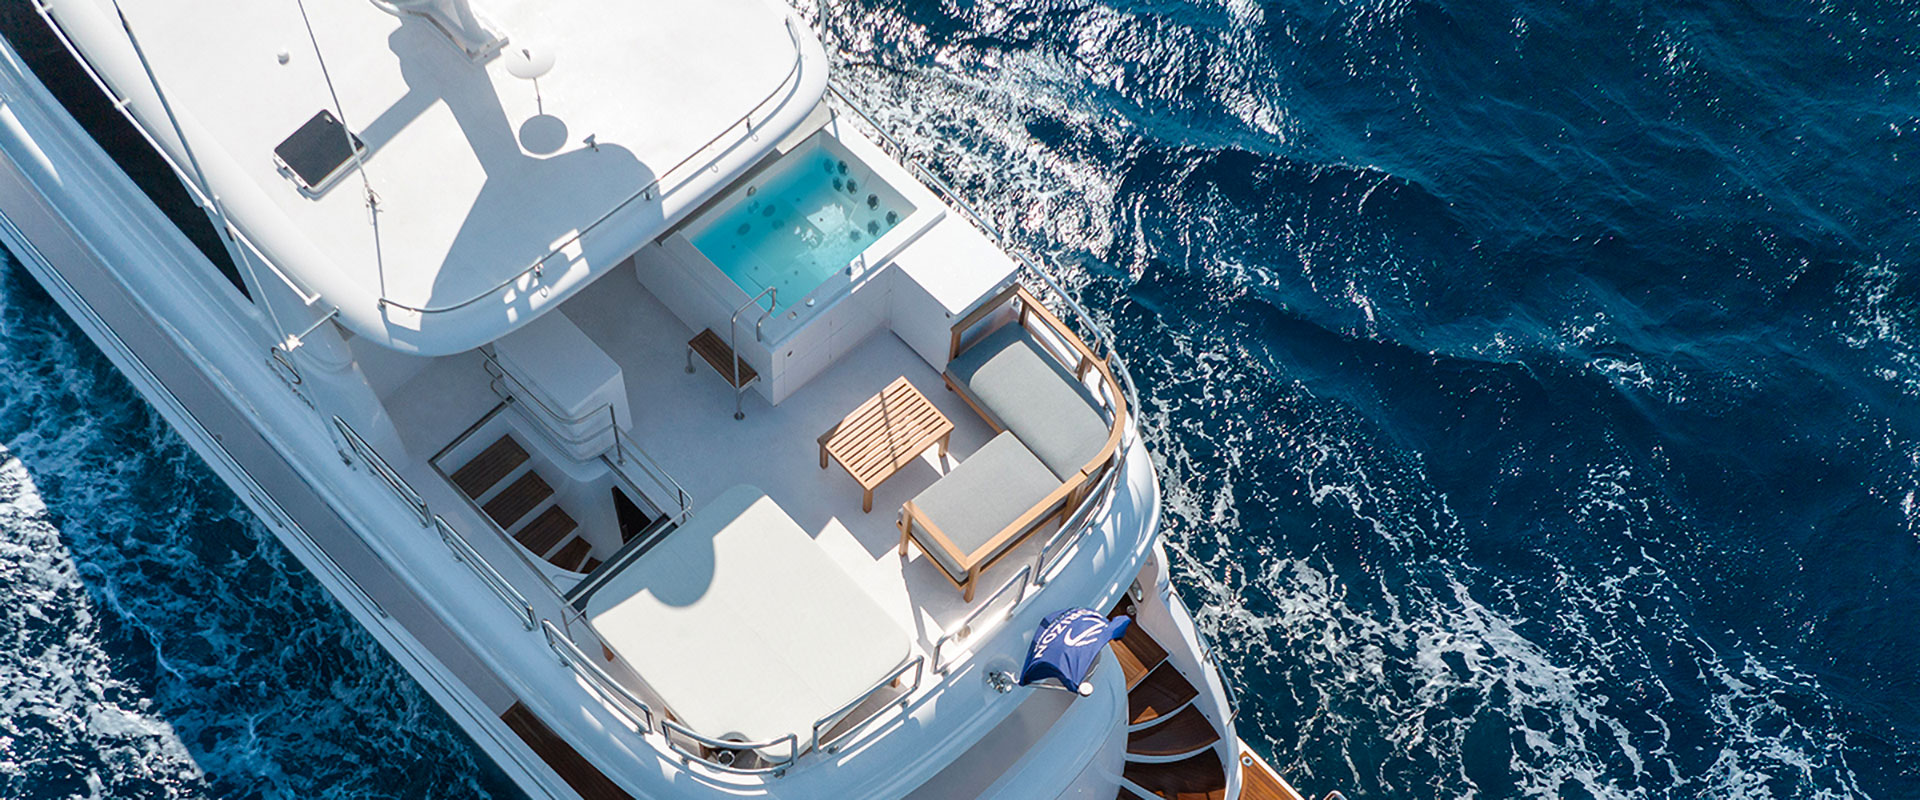 Horizon Yachts E90 La massima esperienza di crociera confortevole 